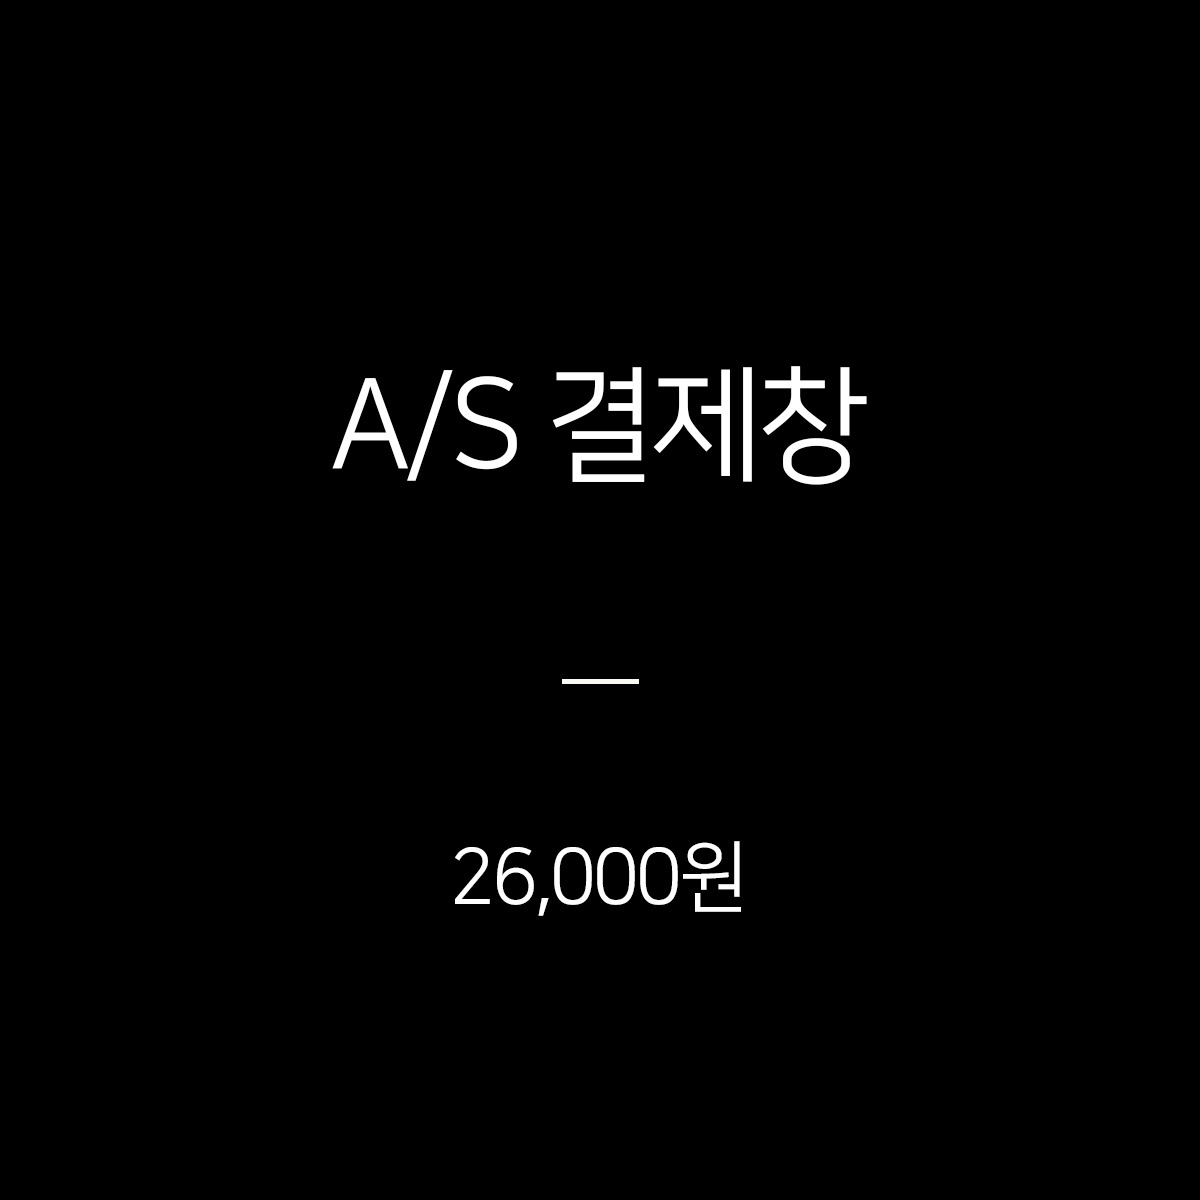 A/S 결제창 - 19,500원